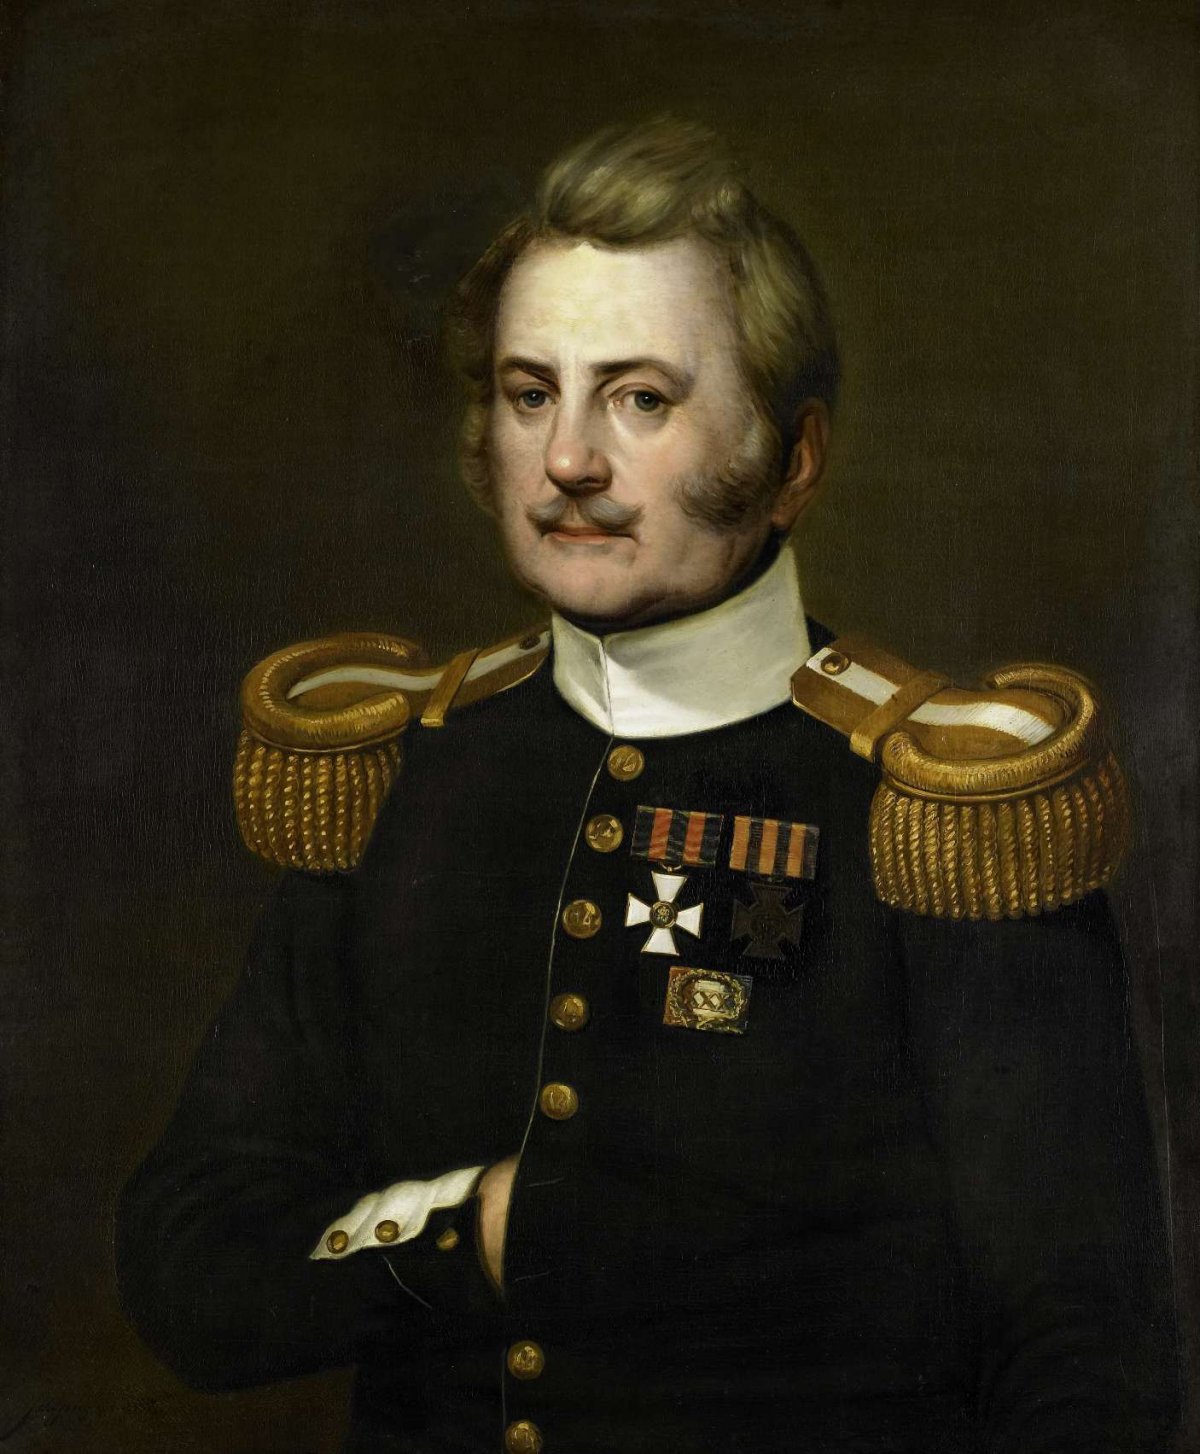 J. D. B. Wilkens, Lieutenant Colonel in the Infantry, Jurjen de Jong, 1837